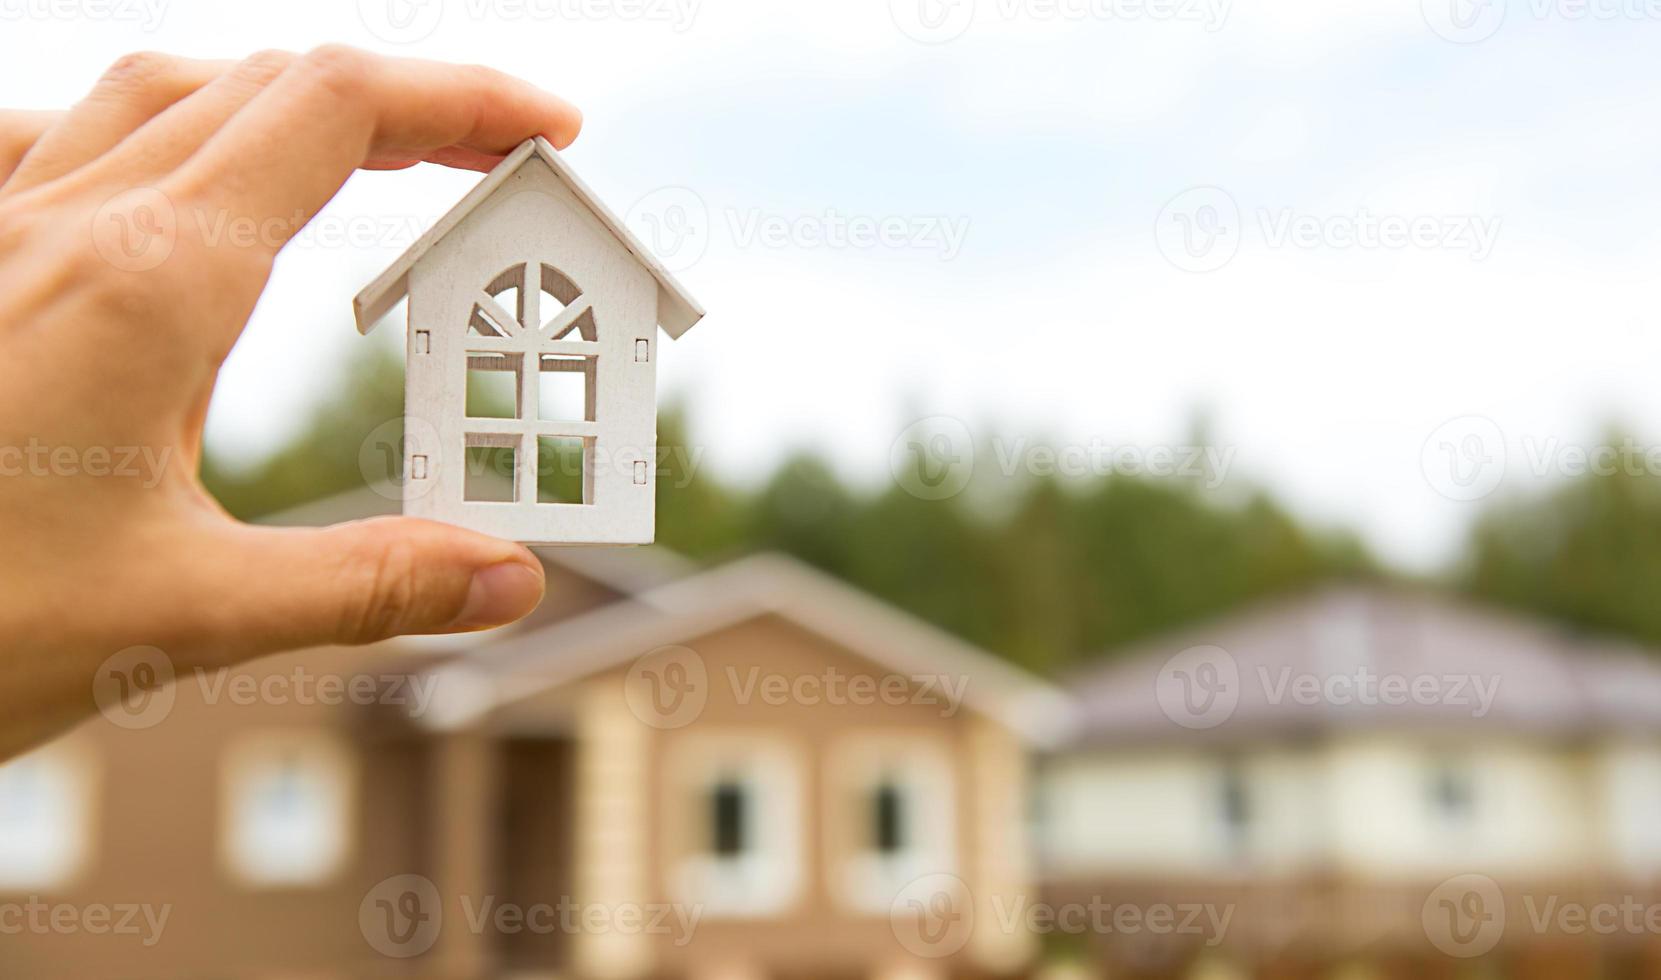 modell av vitt trähus i hand mot bakgrund av stugor i byn. drömma om bostad, bygga, designa, flytta till nytt hus, belåna, hyra och köpa fastigheter. kopieringsutrymme foto